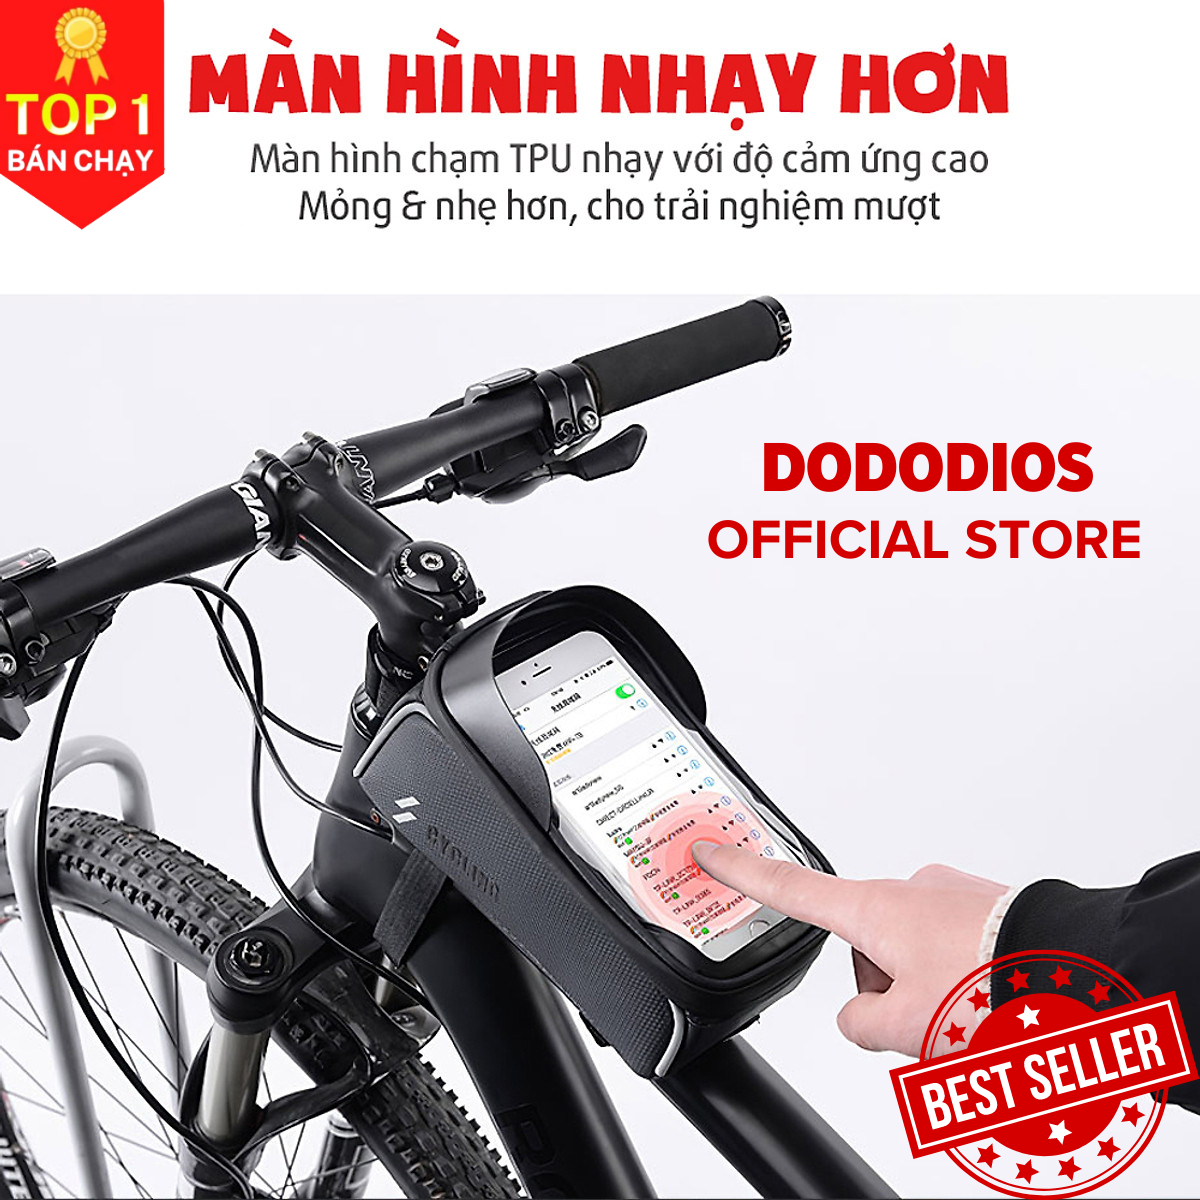 Túi xe đạp treo gắn sườn xe chống nước cao cấp, túi treo sườn xe đạp - Chính hãng dododios